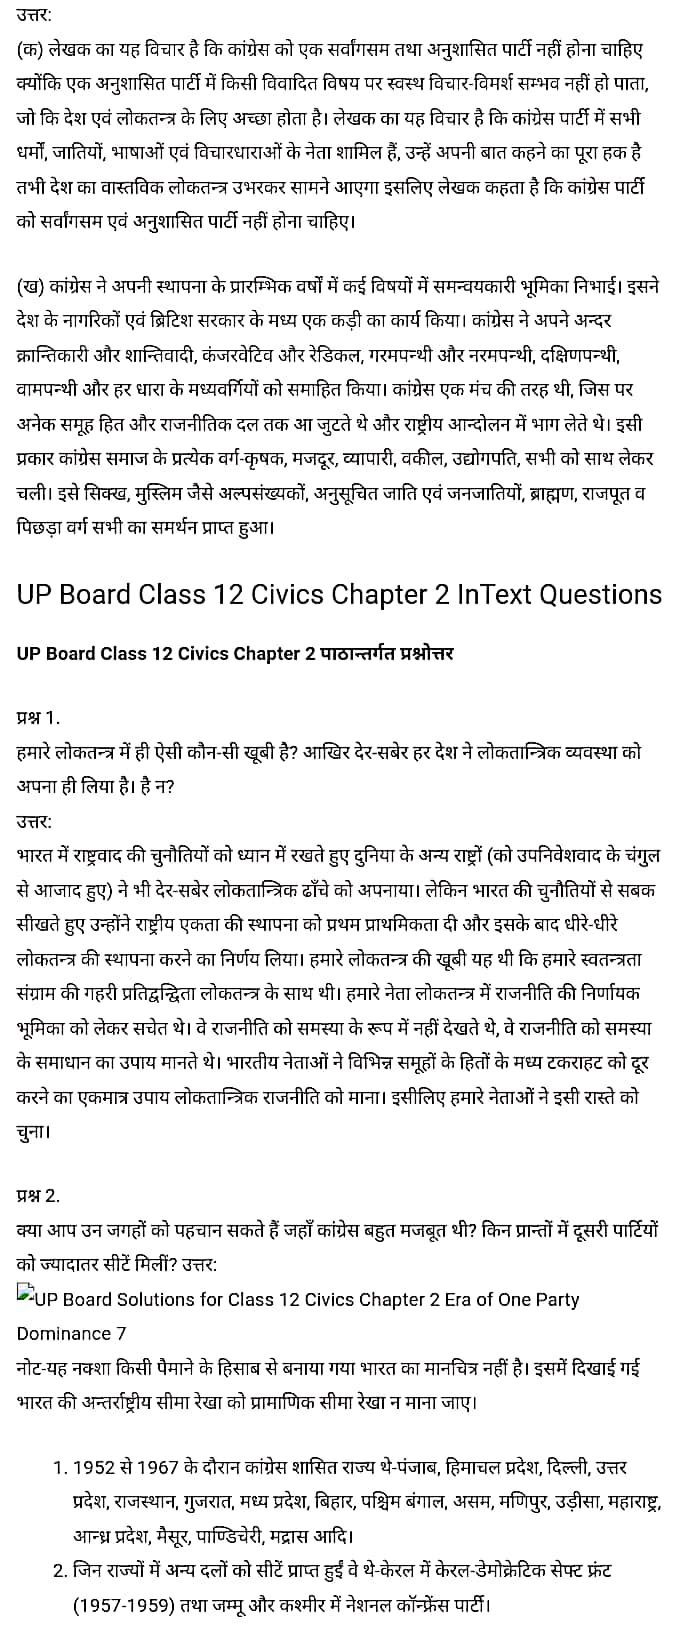 सिविक्स कक्षा 12 नोट्स pdf,  सिविक्स कक्षा 12 नोट्स 2020 NCERT,  सिविक्स कक्षा 12 PDF,  सिविक्स पुस्तक,  सिविक्स की बुक,  सिविक्स प्रश्नोत्तरी Class 12, 12 वीं सिविक्स पुस्तक RBSE,  बिहार बोर्ड 12 वीं सिविक्स नोट्स,   12th Civics book in hindi, 12th Civics notes in hindi, cbse books for class 12, cbse books in hindi, cbse ncert books, class 12 Civics notes in hindi,  class 12 hindi ncert solutions, Civics 2020, Civics 2021, Civics 2022, Civics book class 12, Civics book in hindi, Civics class 12 in hindi, Civics notes for class 12 up board in hindi, ncert all books, ncert app in hindi, ncert book solution, ncert books class 10, ncert books class 12, ncert books for class 7, ncert books for upsc in hindi, ncert books in hindi class 10, ncert books in hindi for class 12 Civics, ncert books in hindi for class 6, ncert books in hindi pdf, ncert class 12 hindi book, ncert english book, ncert Civics book in hindi, ncert Civics books in hindi pdf, ncert Civics class 12, ncert in hindi,  old ncert books in hindi, online ncert books in hindi,  up board 12th, up board 12th syllabus, up board class 10 hindi book, up board class 12 books, up board class 12 new syllabus, up Board Civics 2020, up Board Civics 2021, up Board Civics 2022, up Board Civics 2023, up board intermediate Civics syllabus, up board intermediate syllabus 2021, Up board Master 2021, up board model paper 2021, up board model paper all subject, up board new syllabus of class 12th Civics, up board paper 2021, Up board syllabus 2021, UP board syllabus 2022,  12 veen kee siviks kee kitaab hindee mein, 12 veen kee siviks kee nots hindee mein, 12 veen kaksha kee seebeeesasee kee kitaaben, hindee kee seebeeesasee kee kitaaben, seebeeesasee kee enaseeaaratee kee kitaaben, 12 kee kaksha kee siviks kee nots hindee mein, 12 veen kee kaksha kee hindee kee nats kee solvaints, 2020 kee siviks kee 2020, siviks kee 2022, sivik kee seeviks buk klaas 12, siviks buk in hindee, sivik klaas 12 hindee mein, siviks nots in klaas 12 ap bord in hindee, nchairt all books, nchairt app in hindi, nchairt book solution, nchairt books klaas 10, nchairt books klaas 12, nchairt books kaksha 7 ke lie, nchairt books for hindi mein hindee mein, nchairt books in hindi chlass 10, nchairt books in hindi for chlass 12 sivik, nchairt books in hindi ke lie kaksha 6, nchairt books in hindi pdf, nchairt books 12 hindee pustak, nchairt ainglish pustak , nchairt chivichs book in hindi, nchairt chivichs books in hindi pdf, nchairt chivichs chlass 12, nchairt in hindi, puraanee nchairt books in hindi, onalain nchairt books in hindi, bord 12 veen tak, bord 12 veen ka silebas, bord kaksha 10 kee hindee pustak tak , bord kaksha 12 kee kitaaben, bord kee kaksha 12 kee naee paathyakram, bord kee paathyacharya 2020 tak, bord kee kaksha kee kaksha 2021, up bord siviks 2022, up bord siviks 2023, up bord intarameediet siviks silebas, up bord intarameediet silebas 2021, up bord maastar 2021, up bord modal pepar 2021, up bord bord pepar sabhee vishay, up bord 12 veen siviks ke nae silebas tak. , bord pepar 2021, पुस्तकें up bord silebas 2021, yoopee bord paathyakram 2022,  12 वीं सिविक्स पुस्तक हिंदी में, 12 वीं सिविक्स नोट्स हिंदी में, कक्षा 12 के लिए सीबीएससी पुस्तकें, हिंदी में सीबीएससी पुस्तकें, सीबीएससी  पुस्तकें, कक्षा 12 सिविक्स नोट्स हिंदी में, कक्षा 12 हिंदी एनसीईआरटी समाधान, सिविक्स 2020, सिविक्स 2021, सिविक्स 2022, सिविक्स  बुक क्लास 12, सिविक्स बुक इन हिंदी, बायोलॉजी क्लास 12 हिंदी में, सिविक्स नोट्स इन क्लास 12 यूपी  बोर्ड इन हिंदी, एनसीईआरटी सिविक्स की किताब हिंदी में,  बोर्ड 12 वीं तक, 12 वीं तक की पाठ्यक्रम, बोर्ड कक्षा 10 की हिंदी पुस्तक  , बोर्ड की कक्षा 12 की किताबें, बोर्ड की कक्षा 12 की नई पाठ्यक्रम, बोर्ड सिविक्स 2020, यूपी   बोर्ड सिविक्स 2021, यूपी  बोर्ड सिविक्स 2022, यूपी  बोर्ड सिविक्स 2023, यूपी  बोर्ड इंटरमीडिएट बायोलॉजी सिलेबस, यूपी  बोर्ड इंटरमीडिएट सिलेबस 2021, यूपी  बोर्ड मास्टर 2021, यूपी  बोर्ड मॉडल पेपर 2021, यूपी  मॉडल पेपर सभी विषय, यूपी  बोर्ड न्यू क्लास का सिलेबस  12 वीं सिविक्स, अप बोर्ड पेपर 2021, यूपी बोर्ड सिलेबस 2021, यूपी बोर्ड सिलेबस 2022,